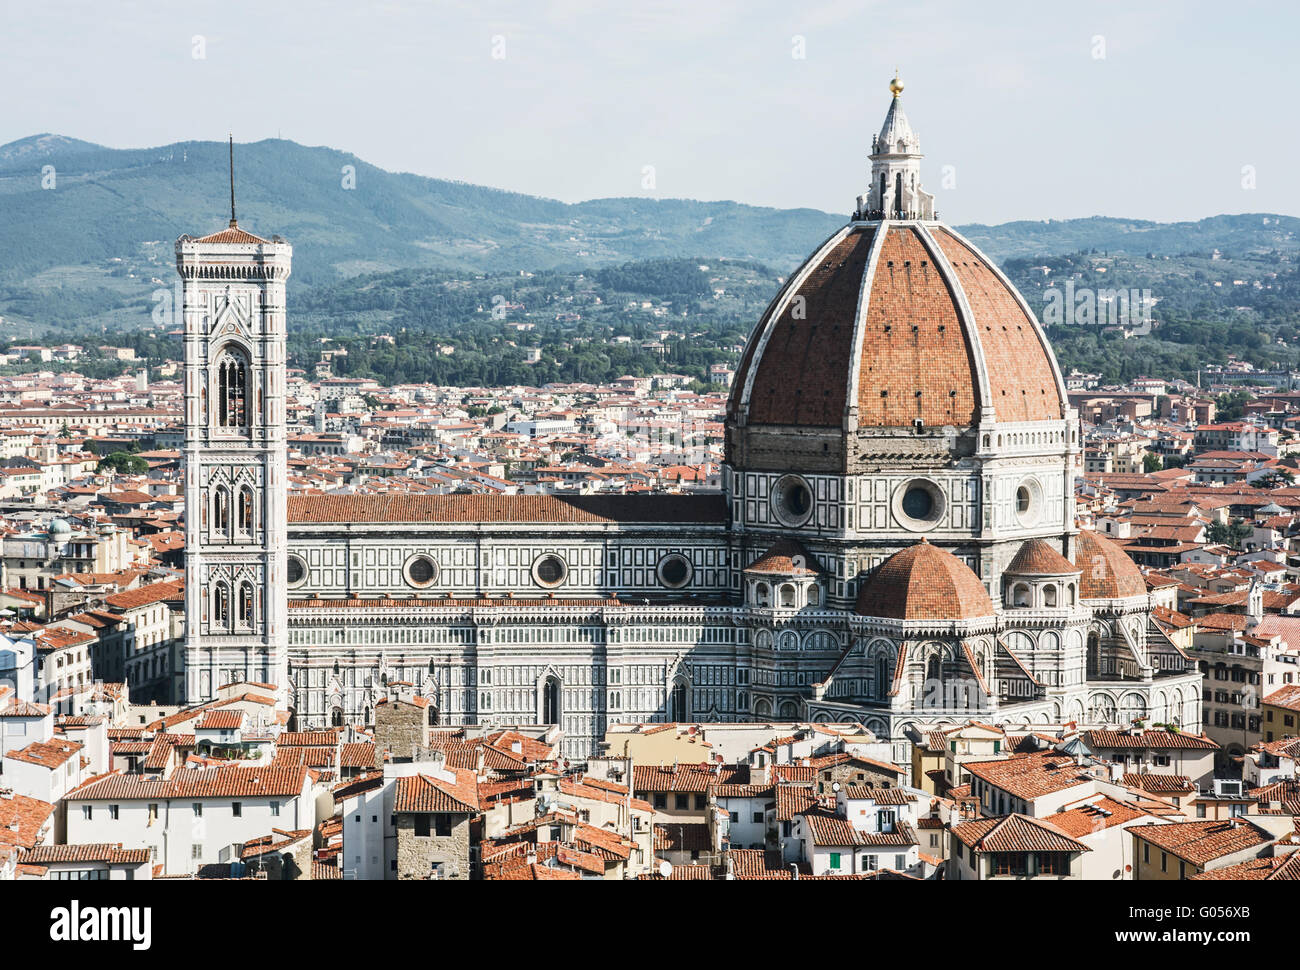 Kathedrale Santa Maria del Fiore und Giottos Campanile in Florenz, Toskana, Italien. Kulturelles Erbe. Historischen Zentrum. Städtischen sc Stockfoto